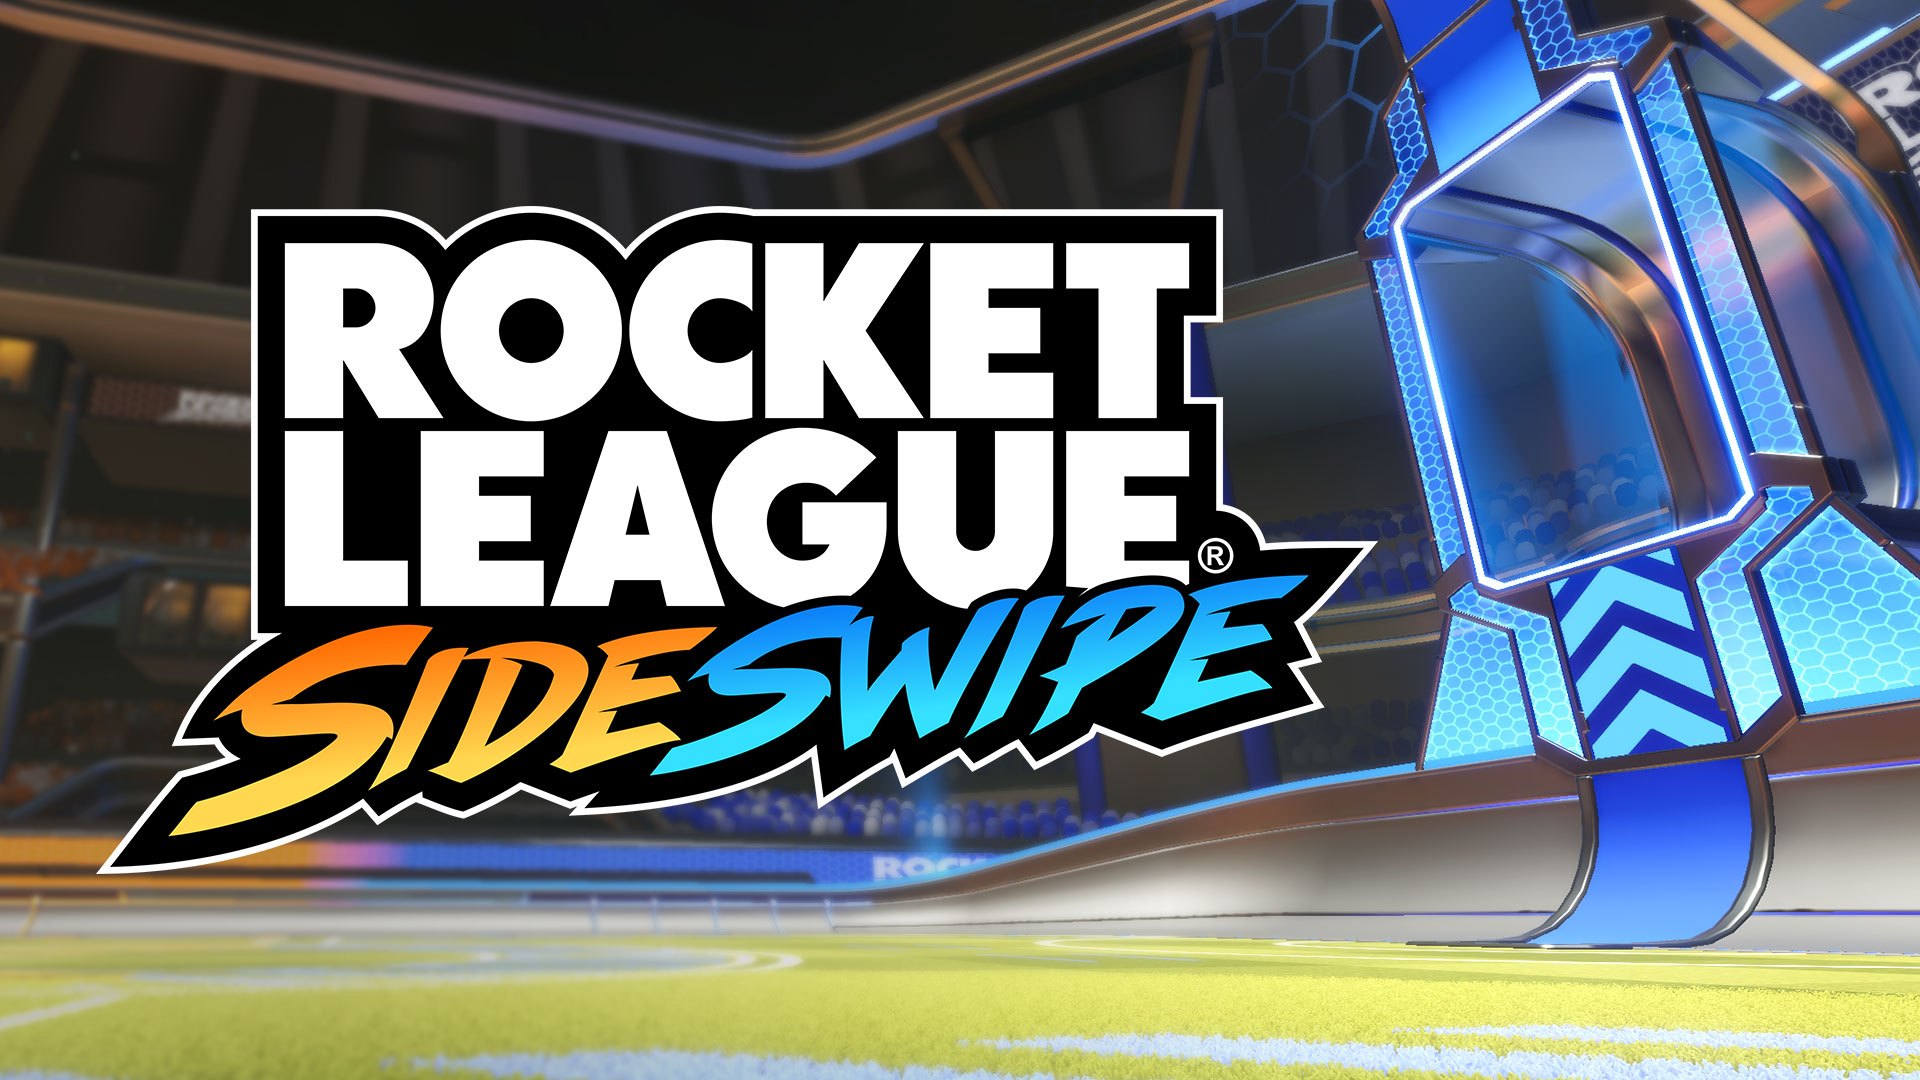  เปิดตัว Rocket League Sideswipe พร้อมเปิดให้เล่นฟรีบนมือถือ ทั้ง iOS และ Android ในช่วงปลายปีนี้